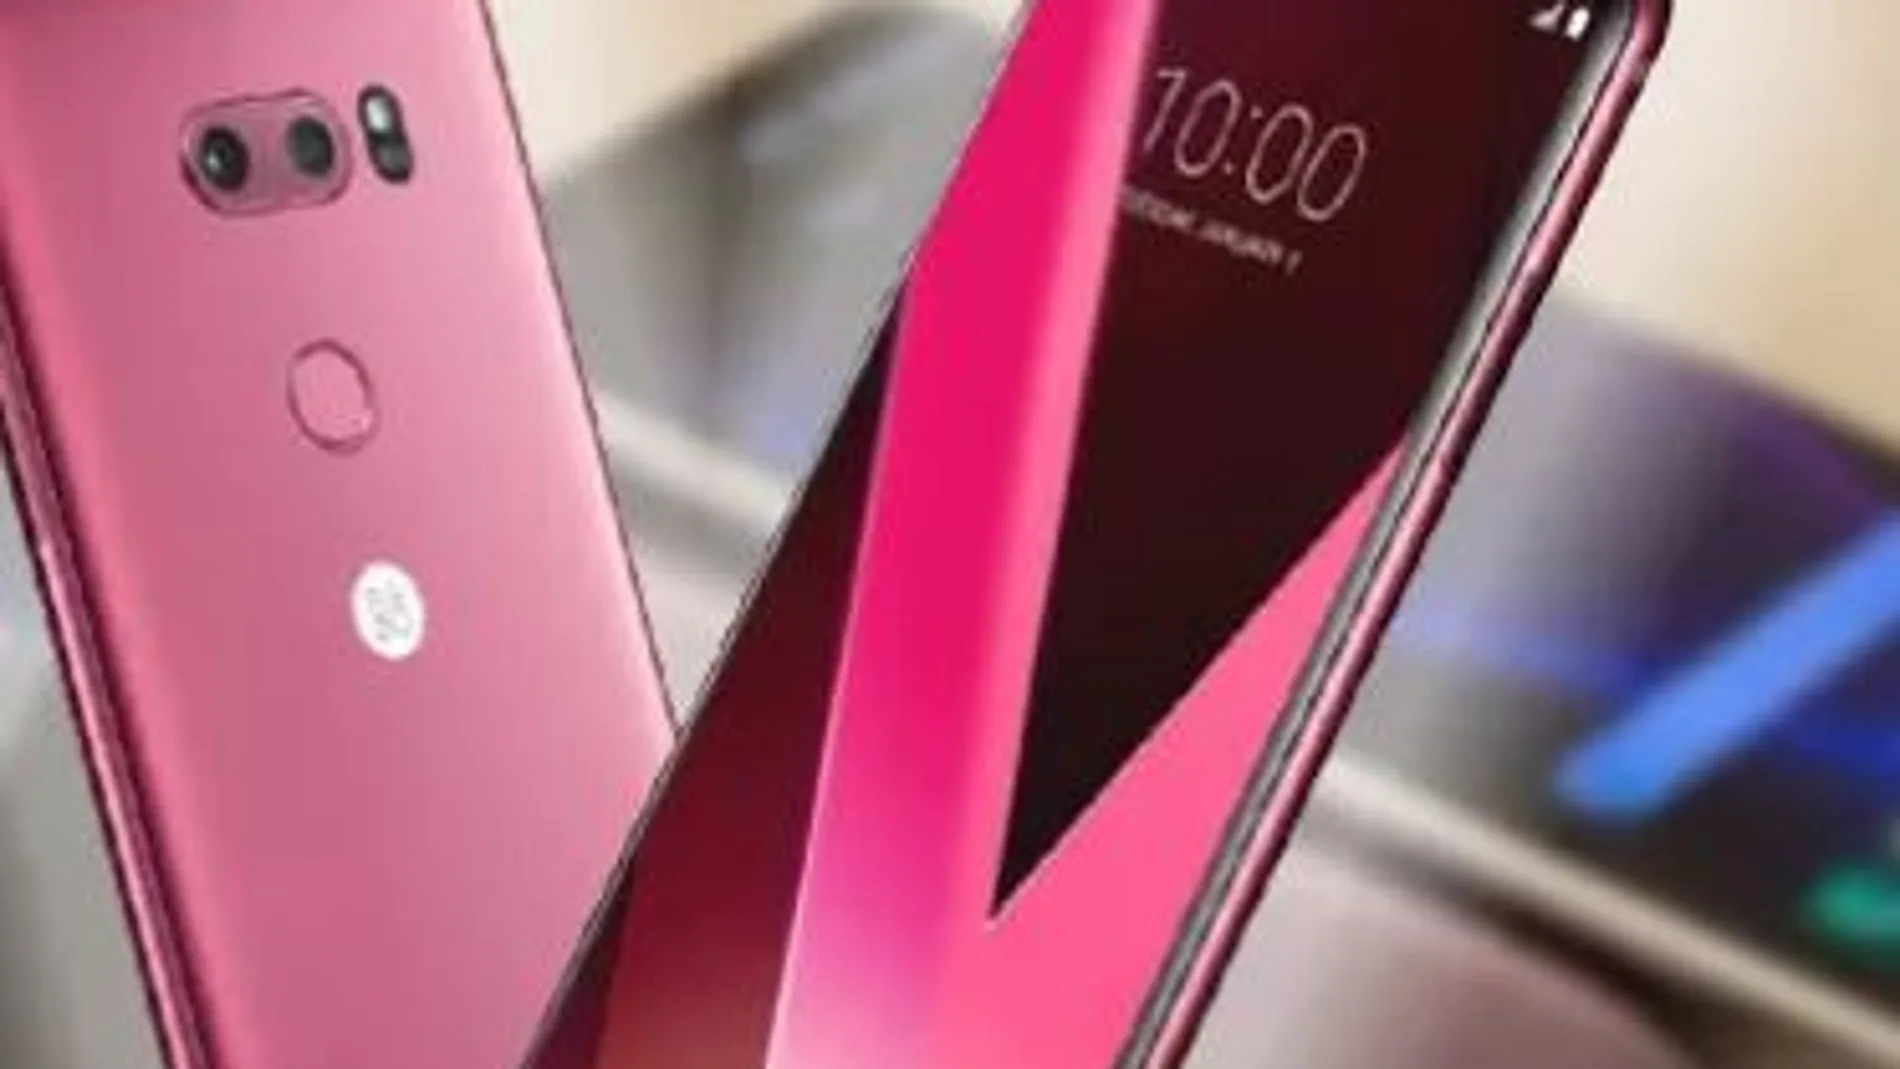 La incorporación de la versión «Raspberry Rose» se añade a los cuatro colores en los que ya se encontraba disponible el LG V30: negro, plateado, azul y violeta.